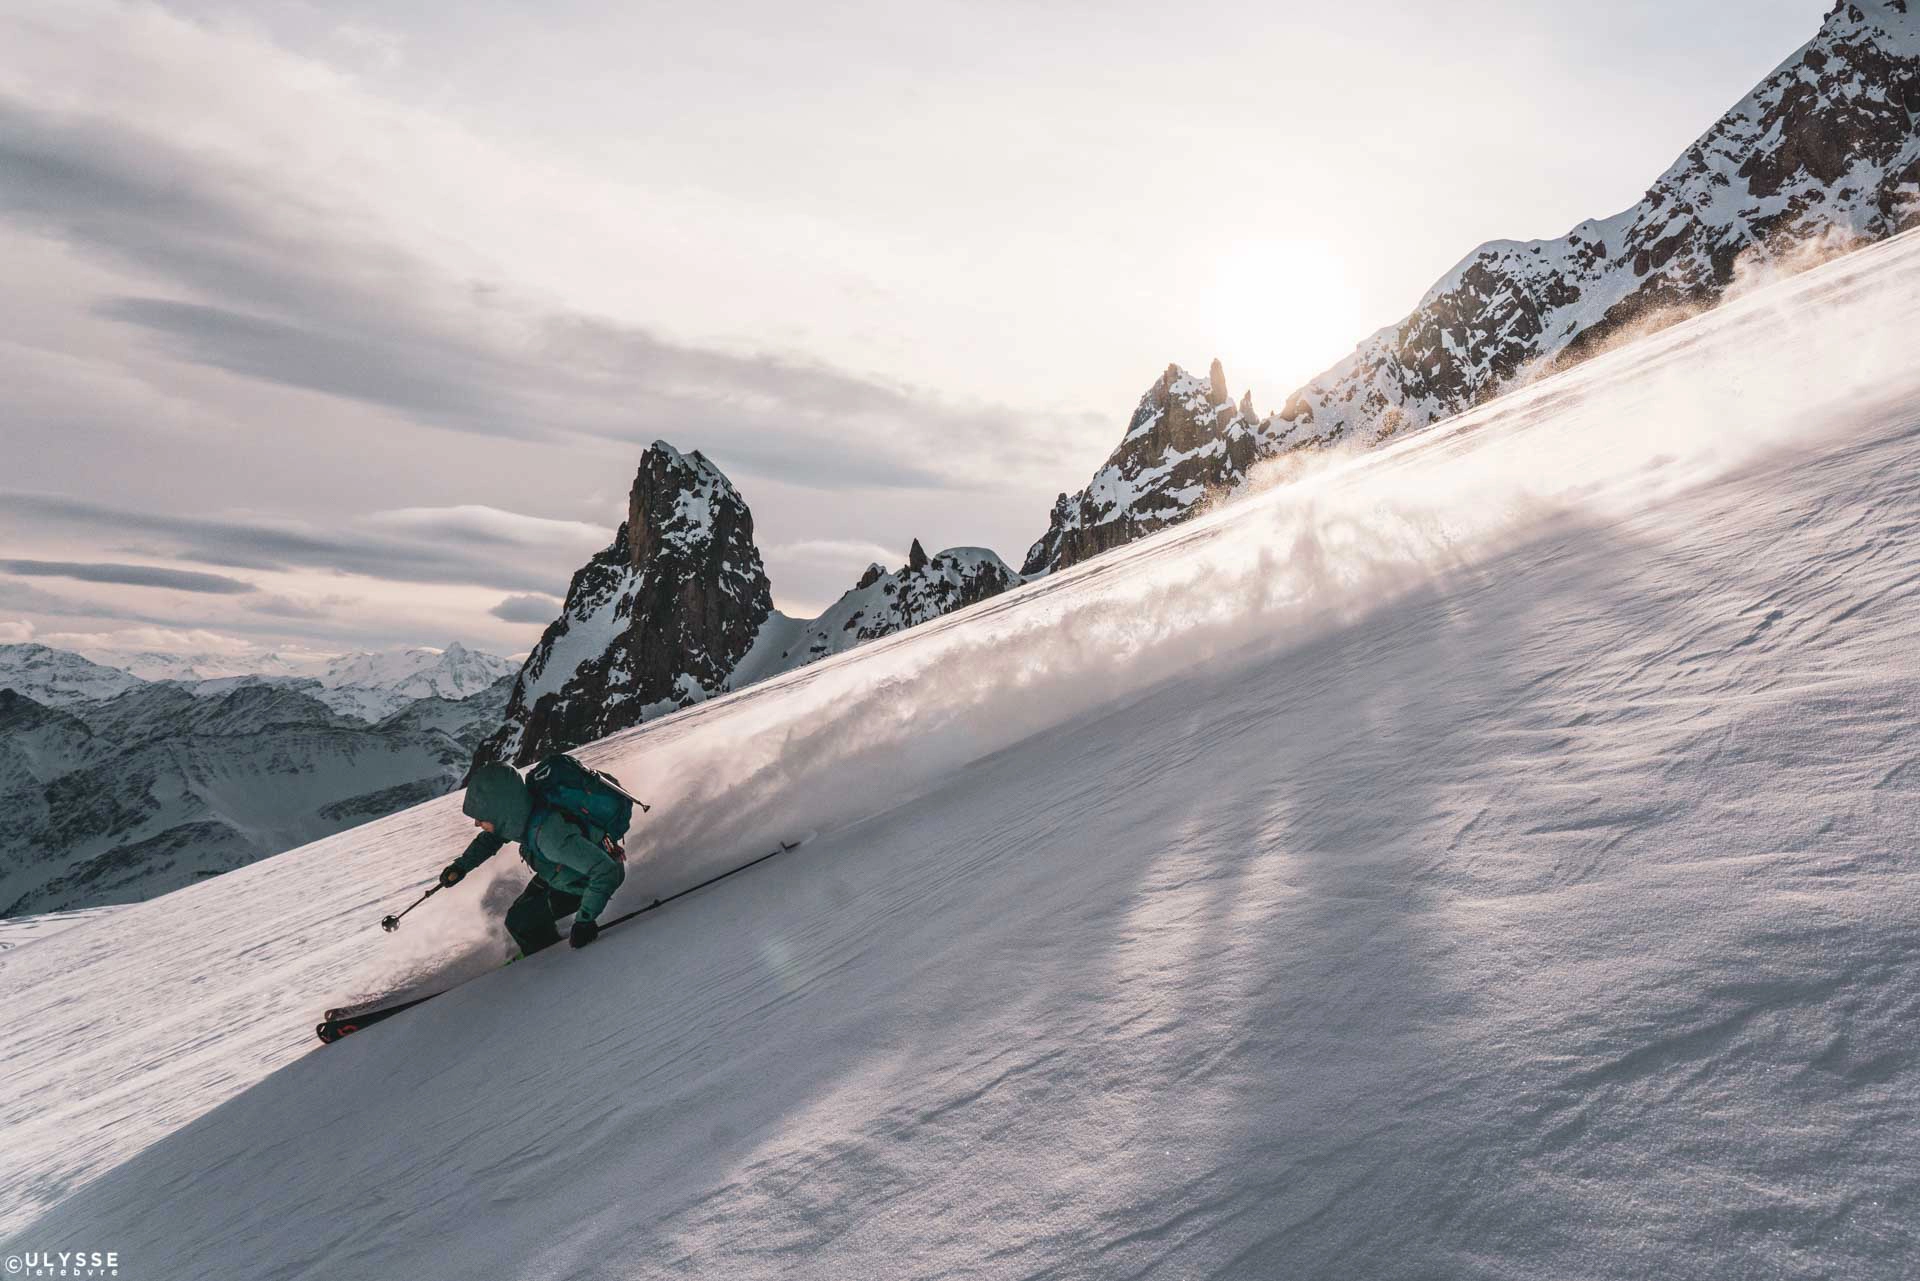 16 skis de rando pour femme – Alpine Mag